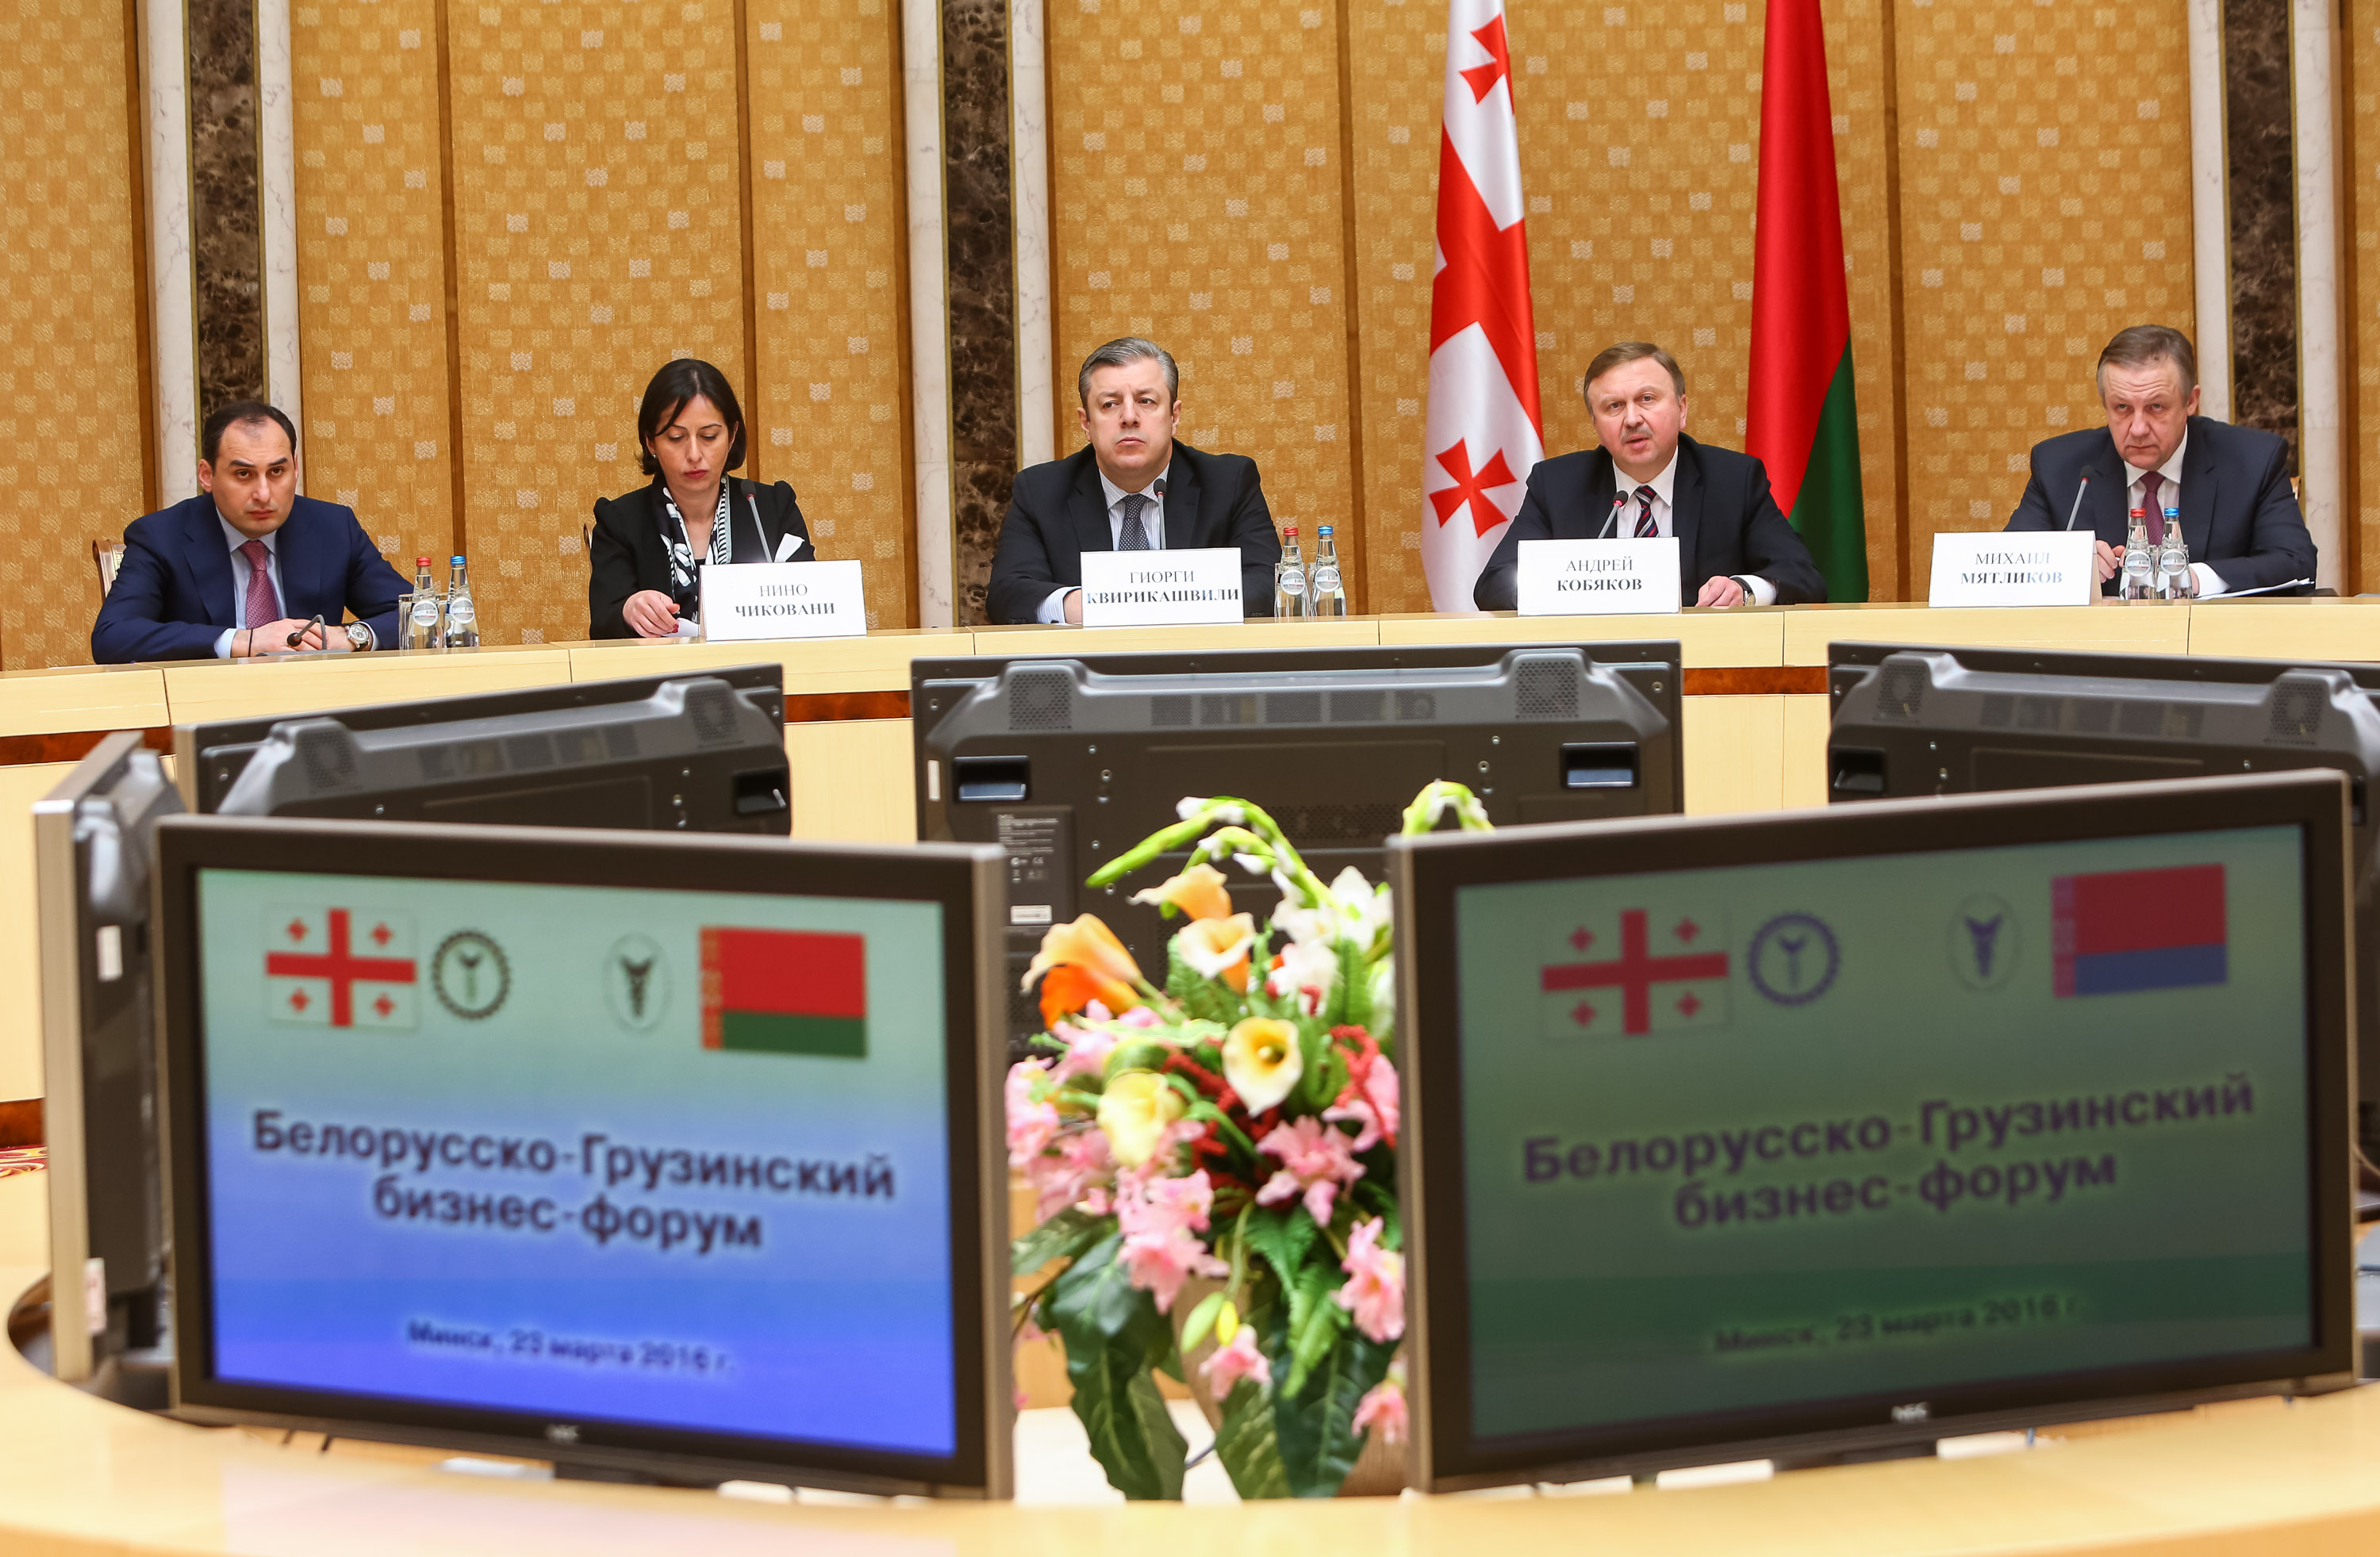 Белорусско-Грузинский бизнес-форум